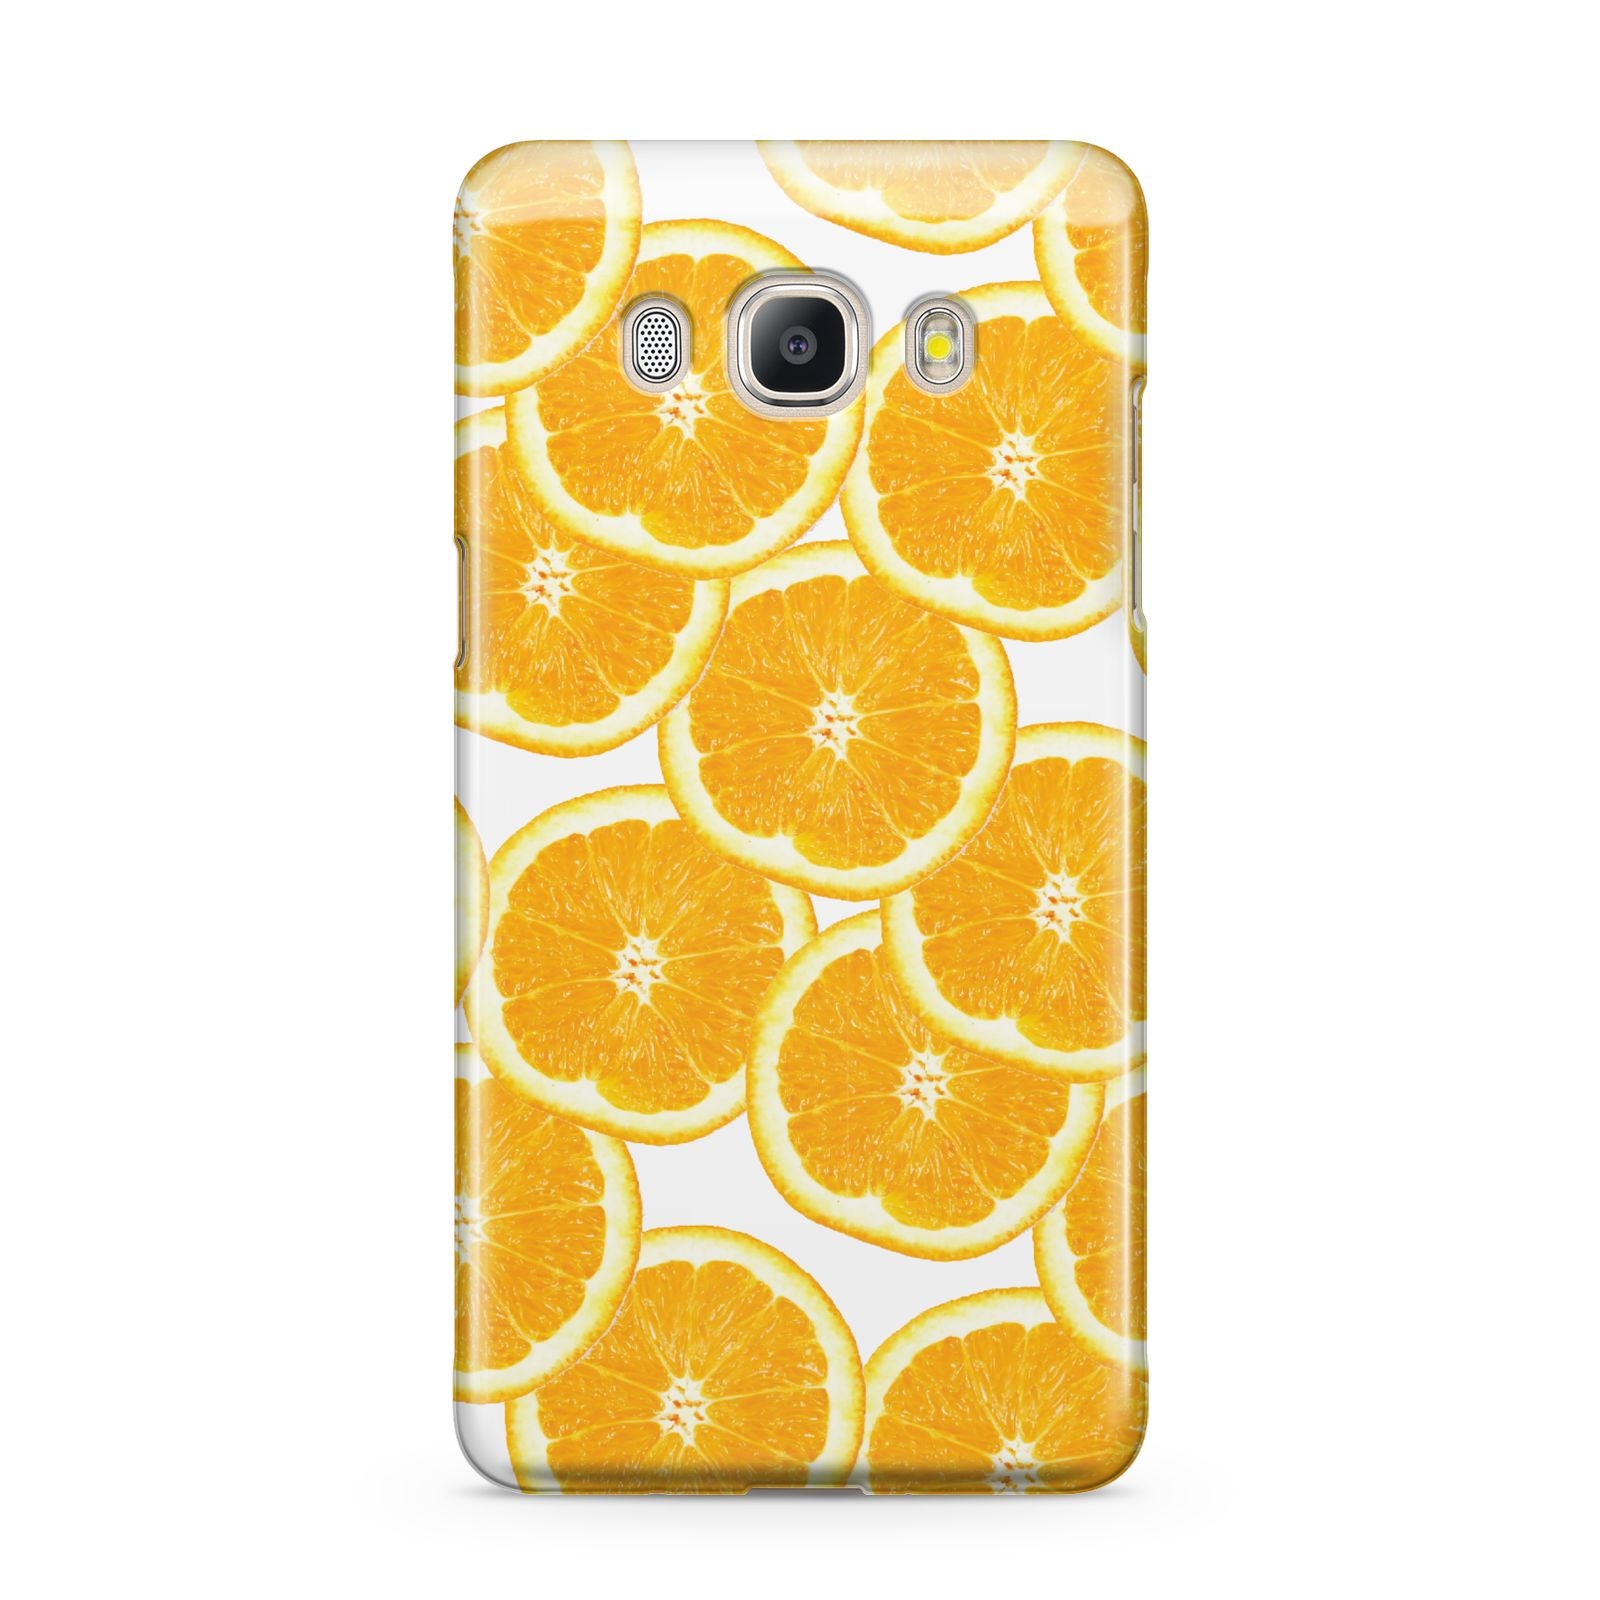 Orange Fruit Slices Samsung Galaxy J5 2016 Case